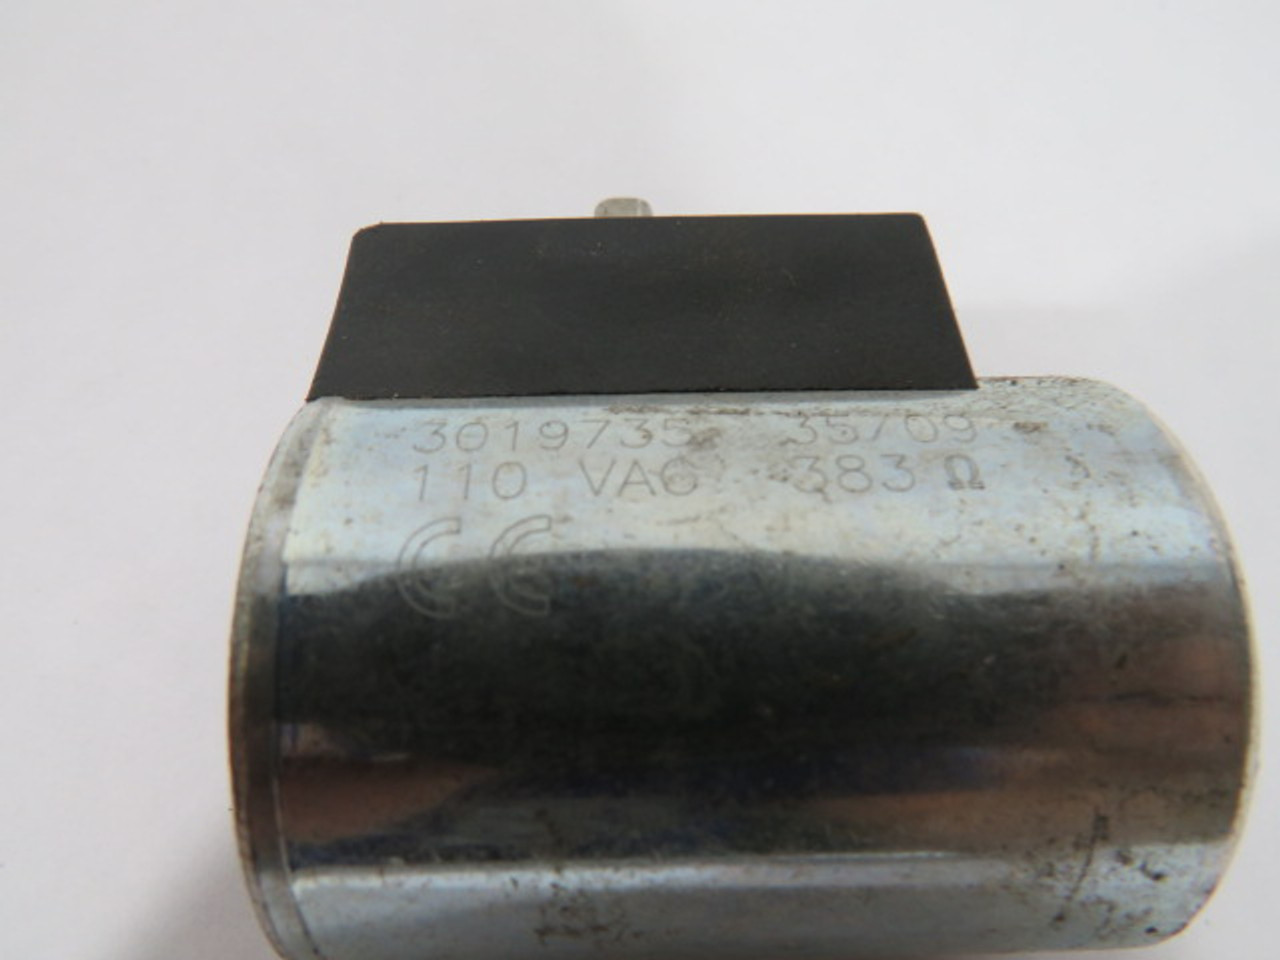 Hydac 03019735 Accumulator Coil 110VAC 383 Ω USED